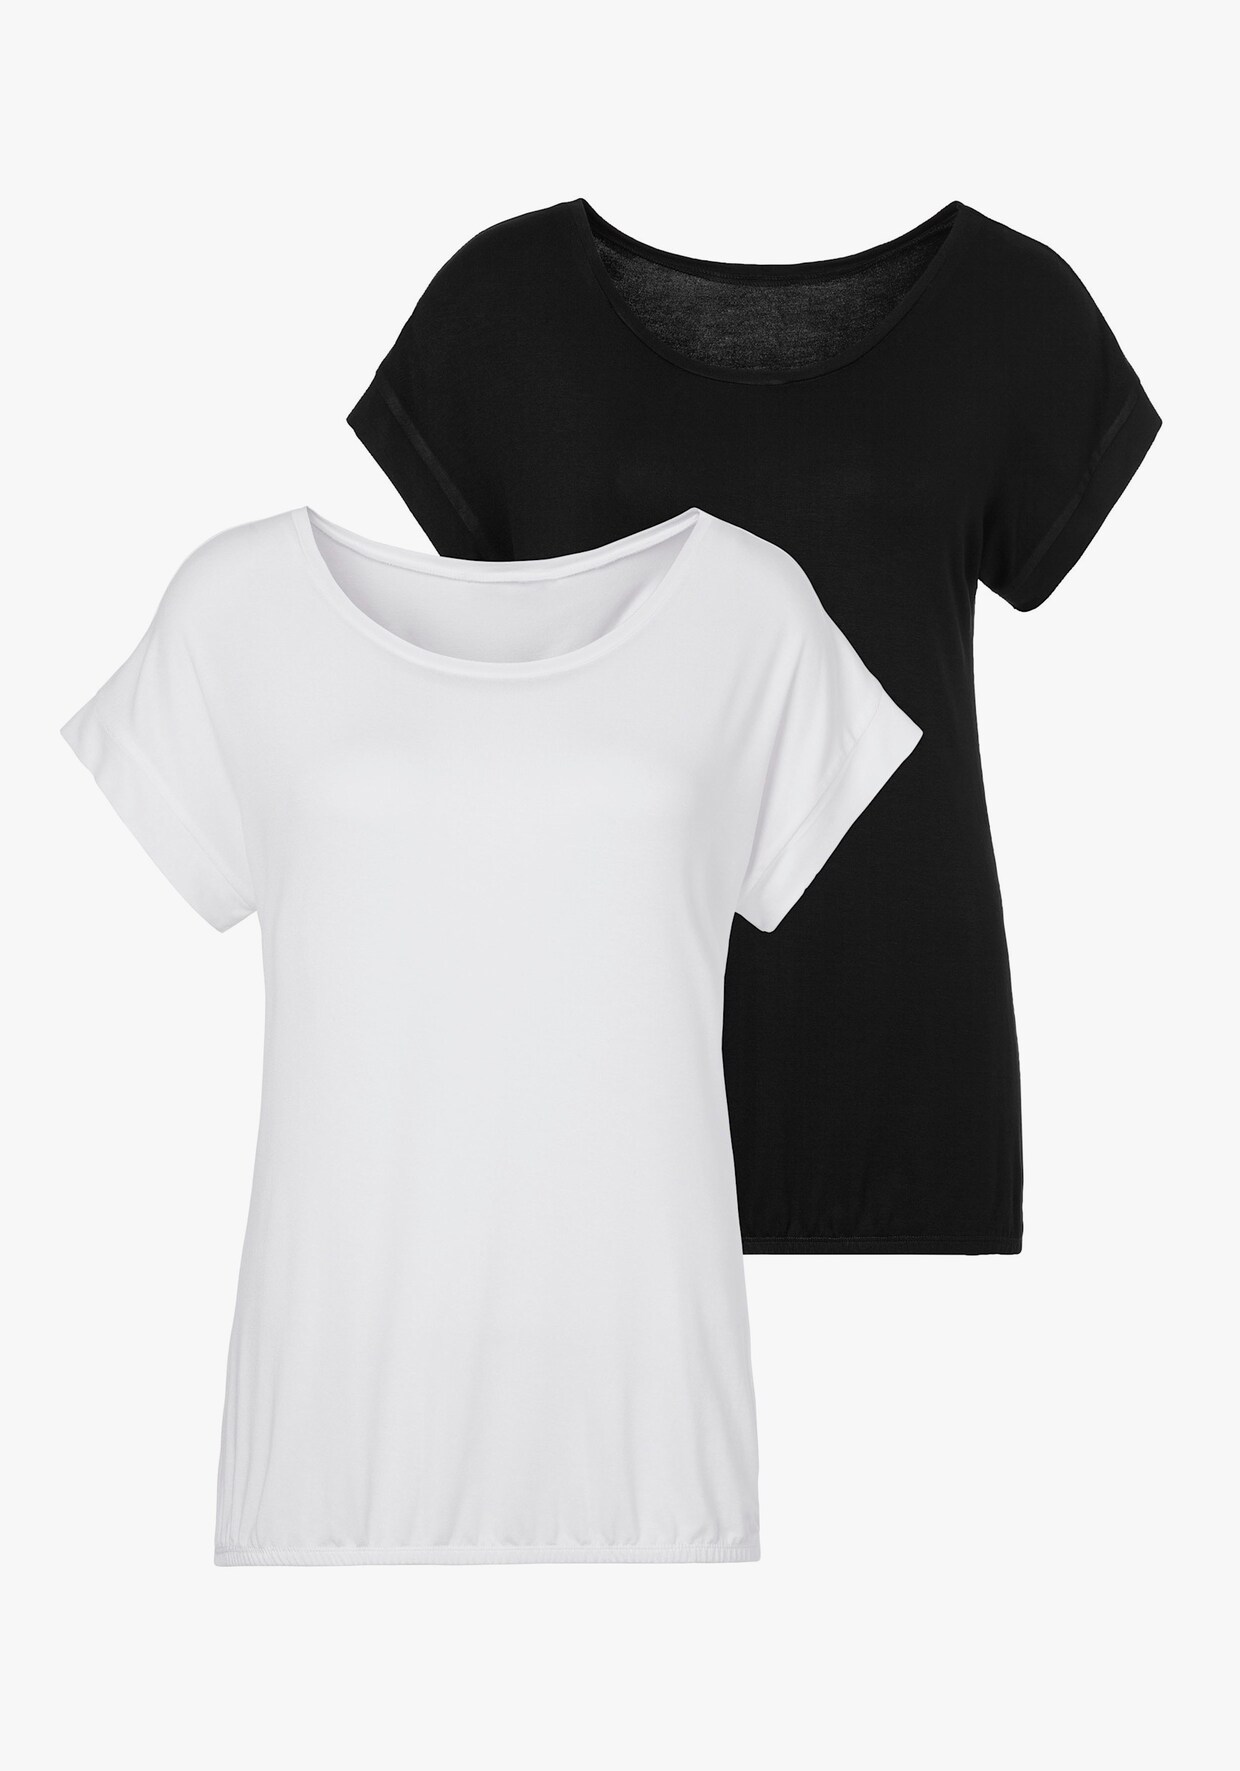 Vivance T-shirt - wit, zwart